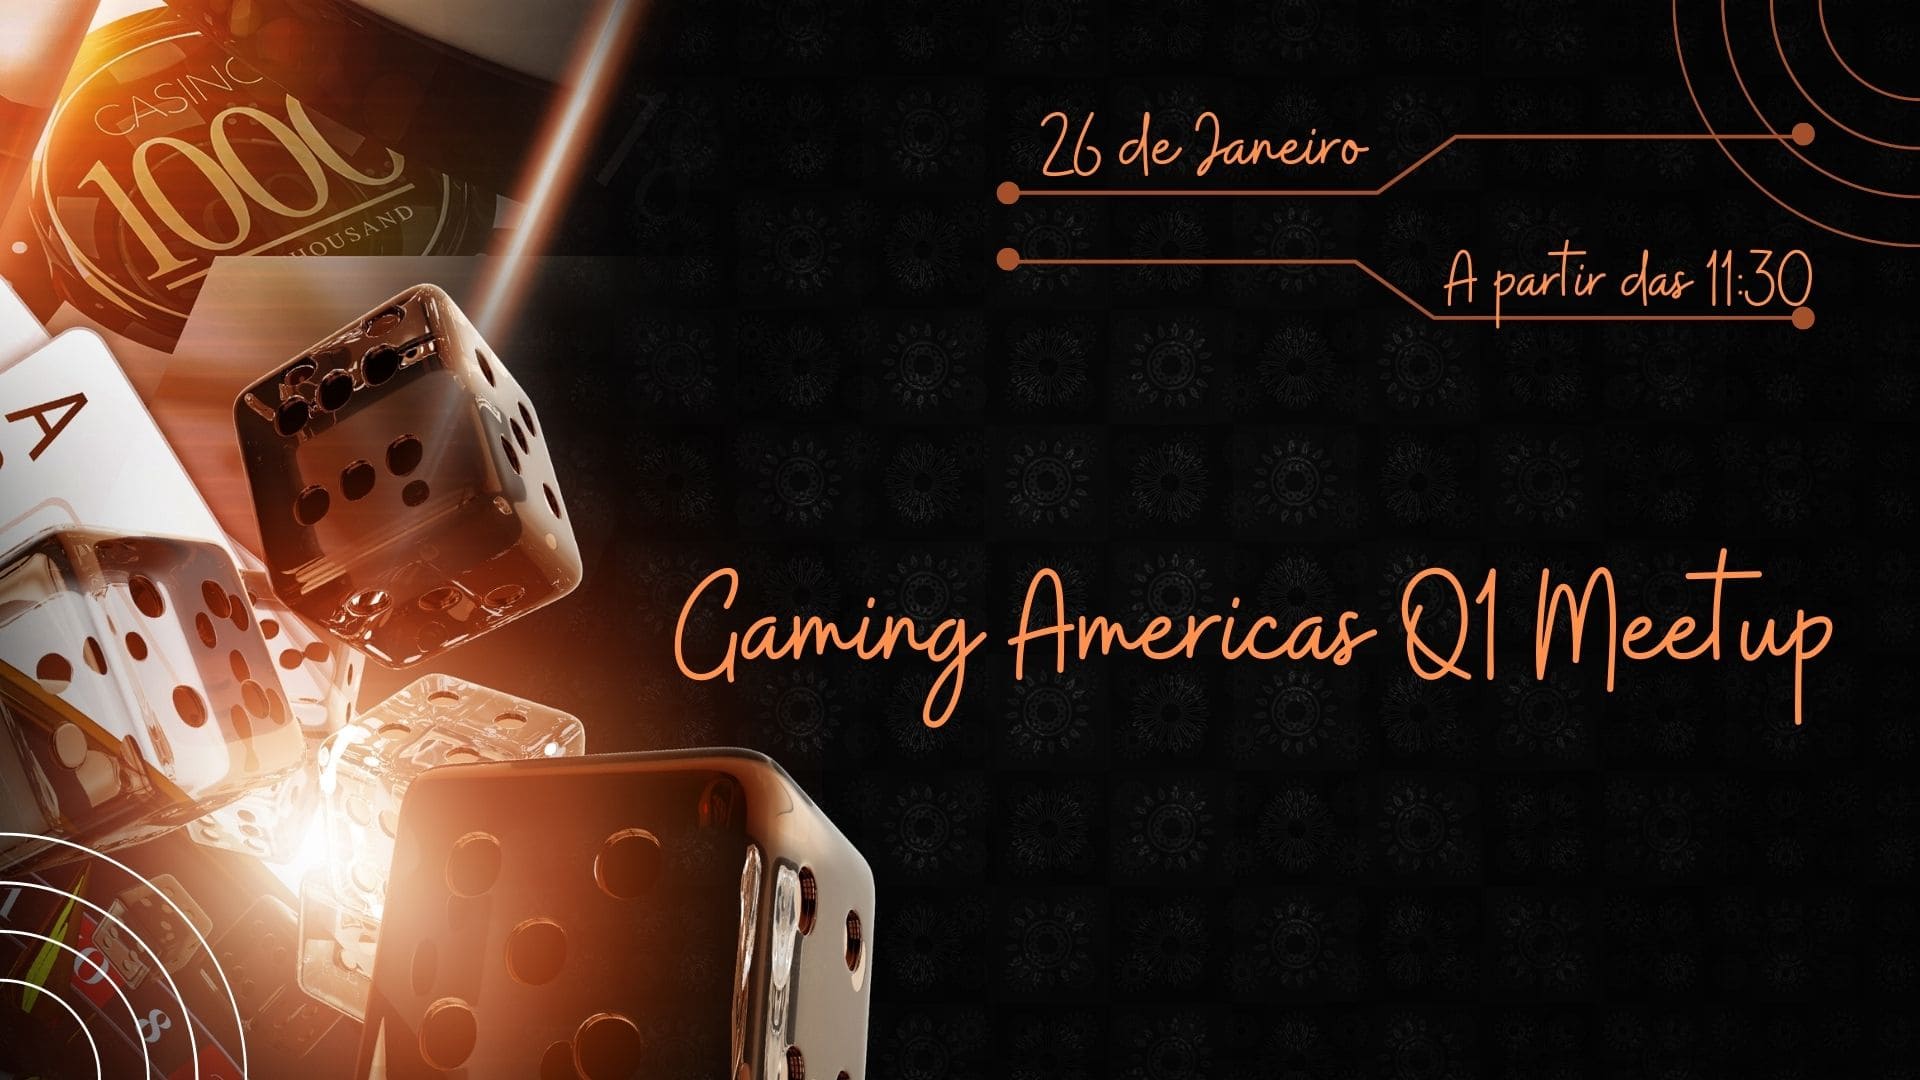 Gaming Americas acontecerá no dia 26 de Janeiro